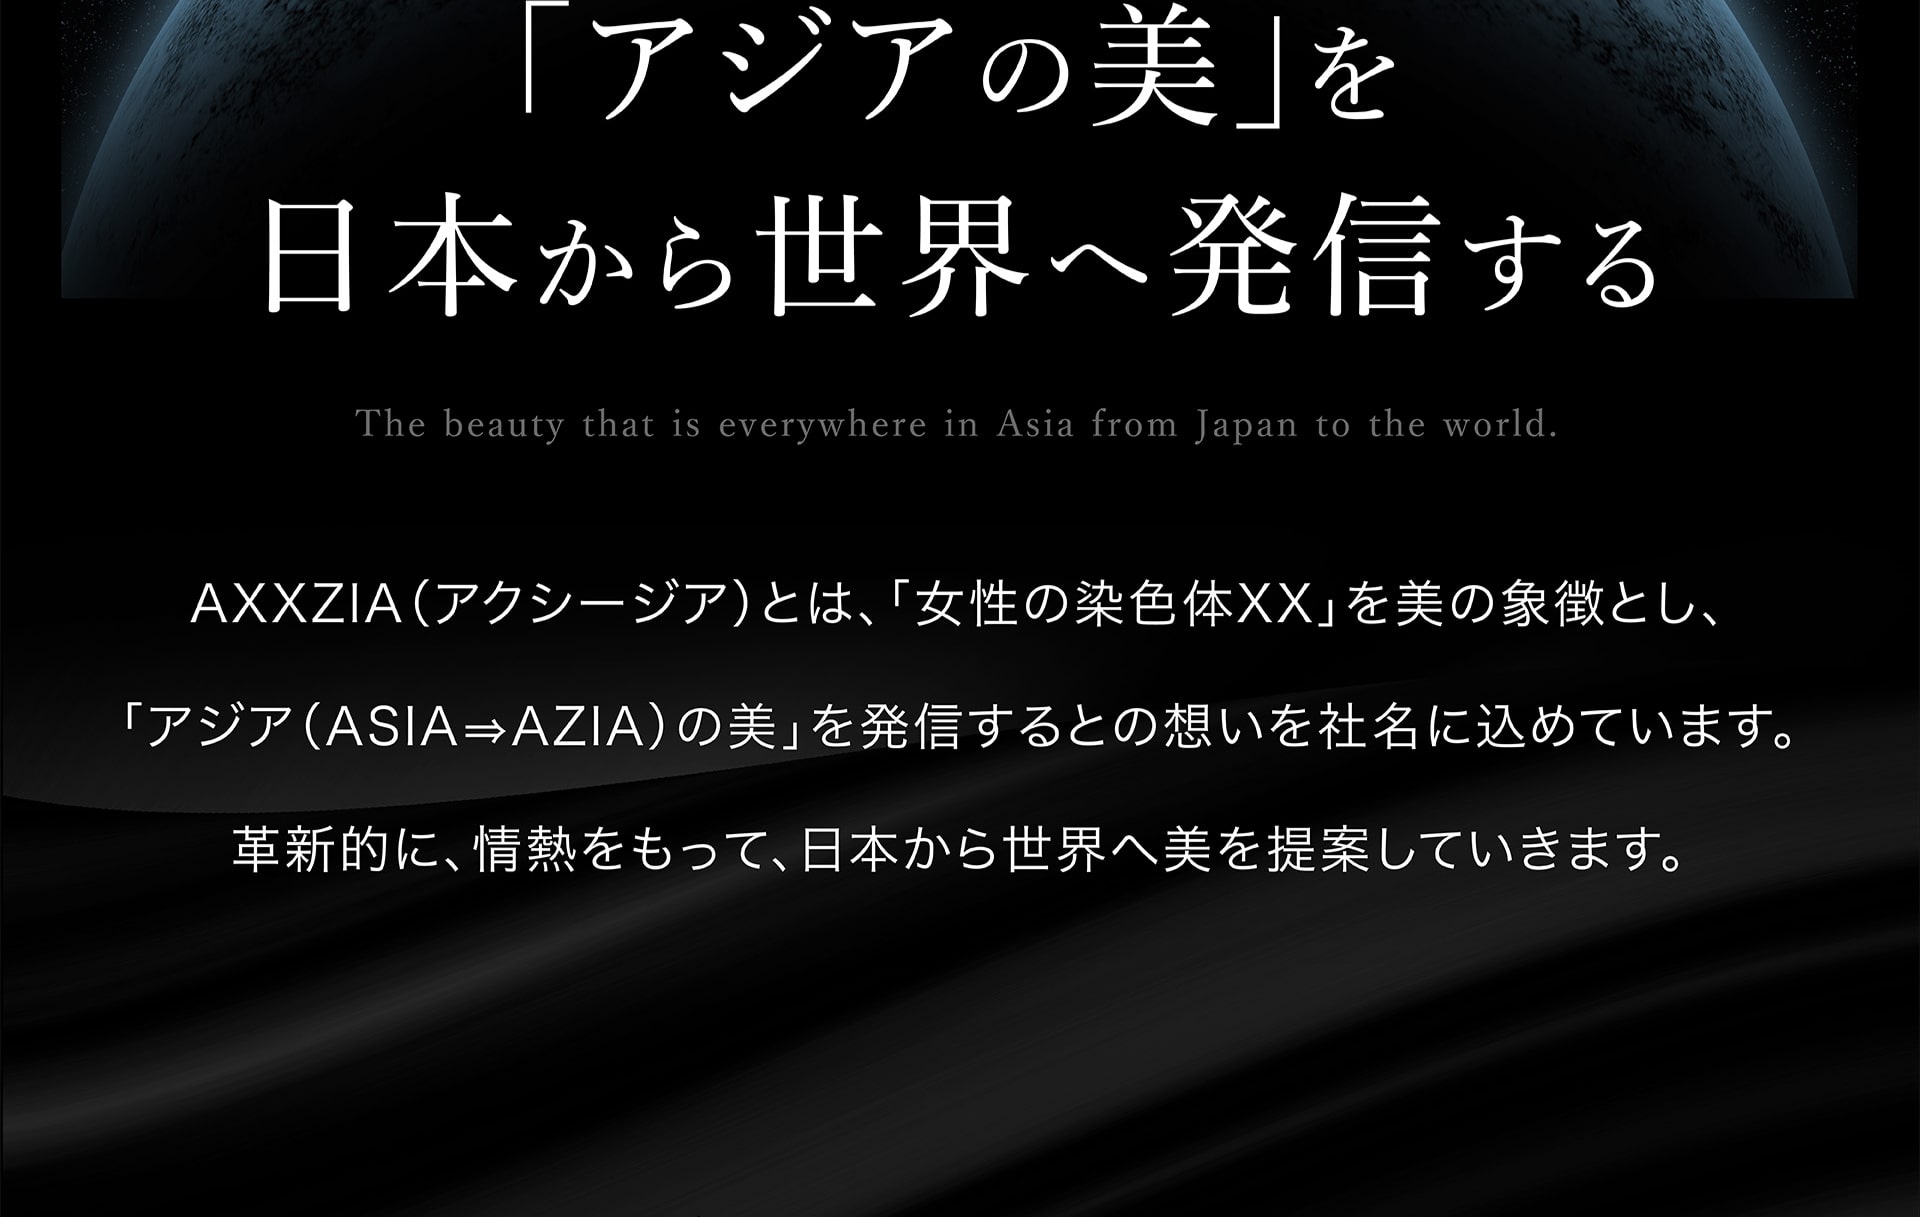 「アジアの美」を日本から世界へ発信する